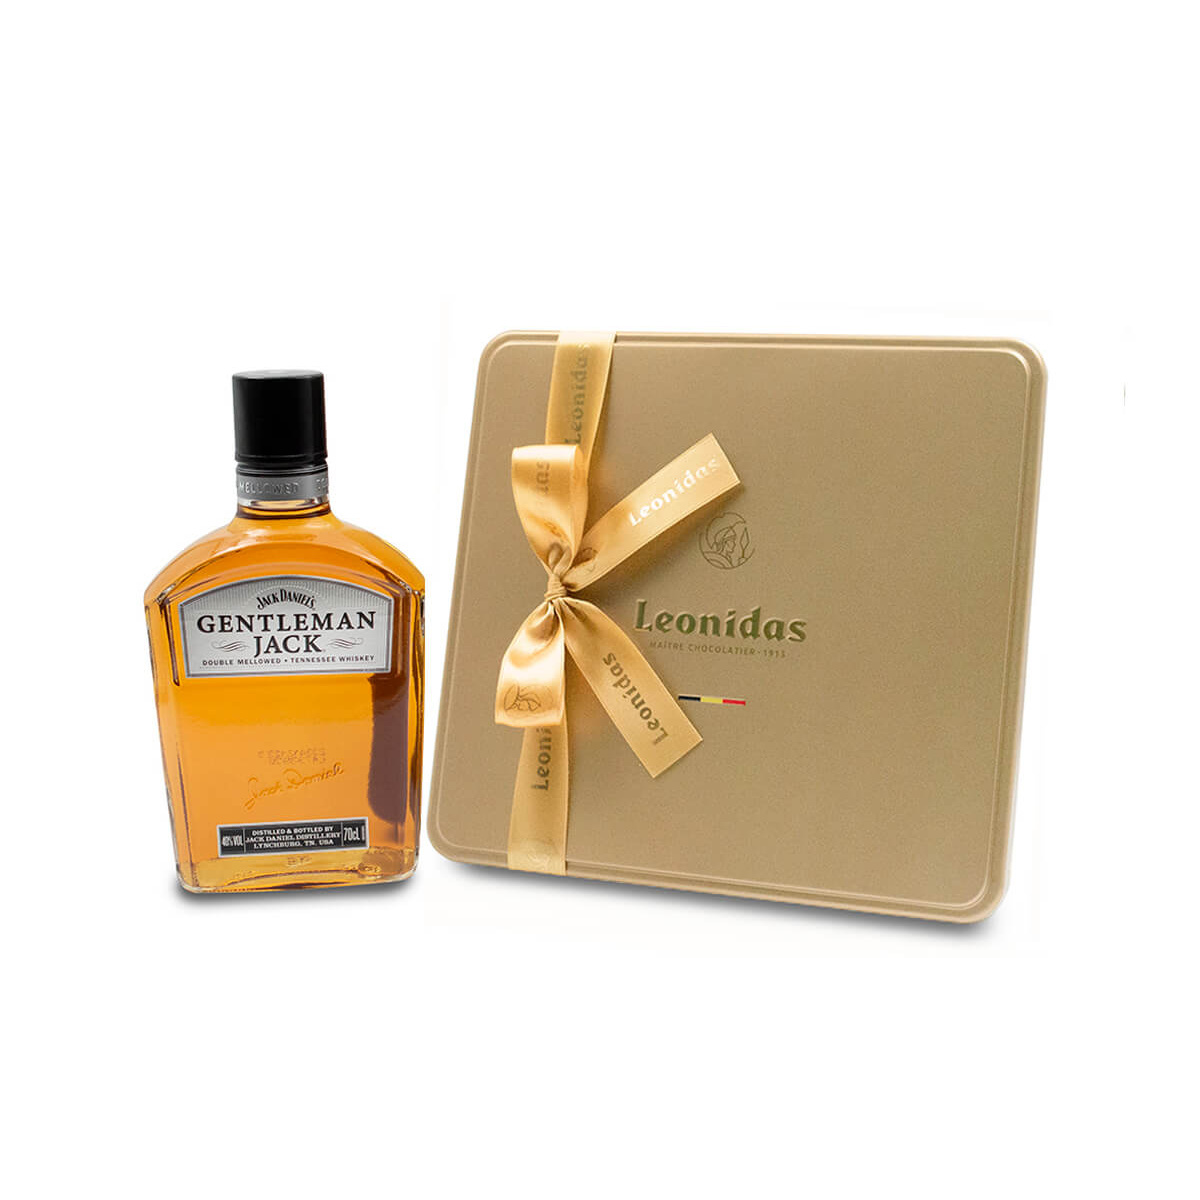 Χρυσή κασετίνα πολυτελείας “Heritage L” με ποικιλία πραλινών 470g και 1 φιάλη ουΐσκι Jack Daniel's Gentleman 700ml